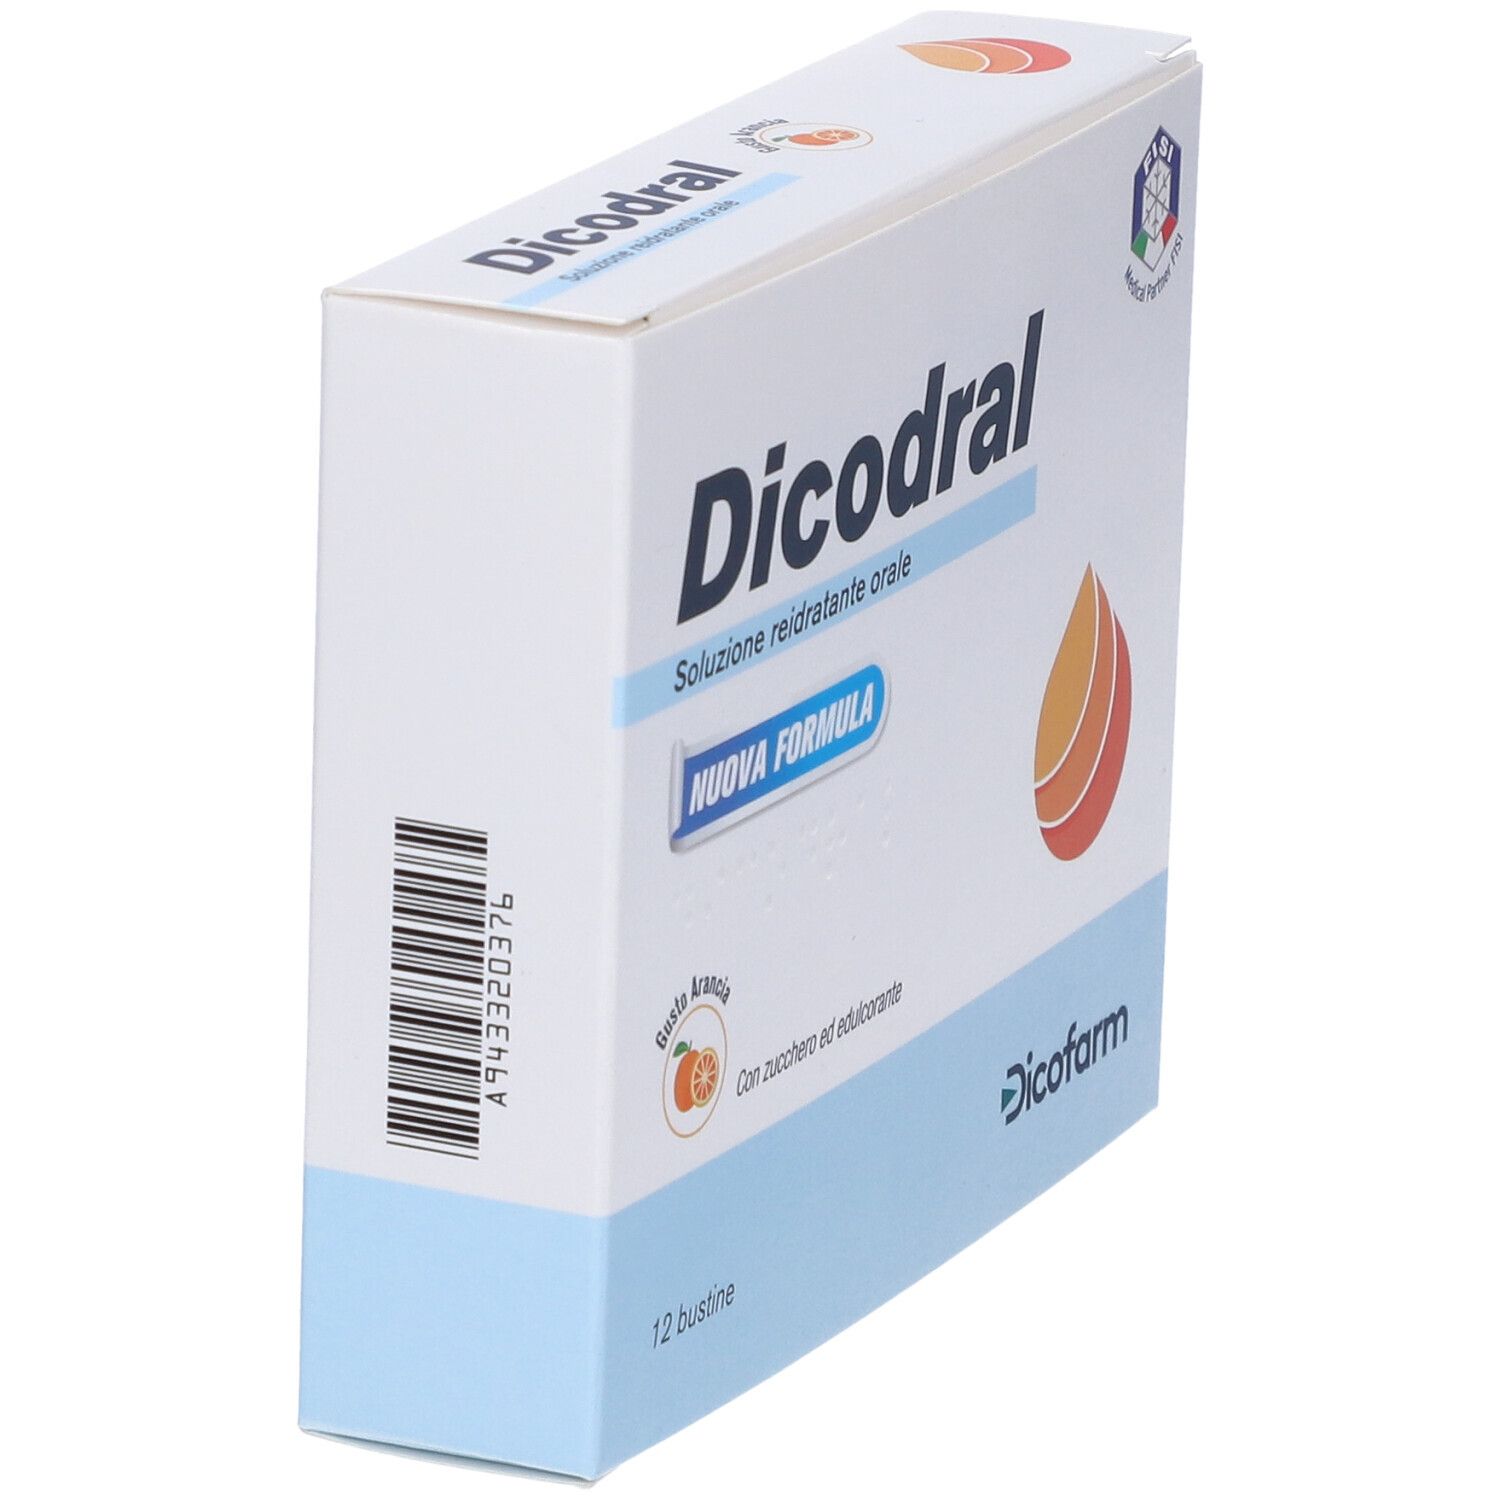 Dicodral® Soluzione Reidratante Orale Gusto Arancia